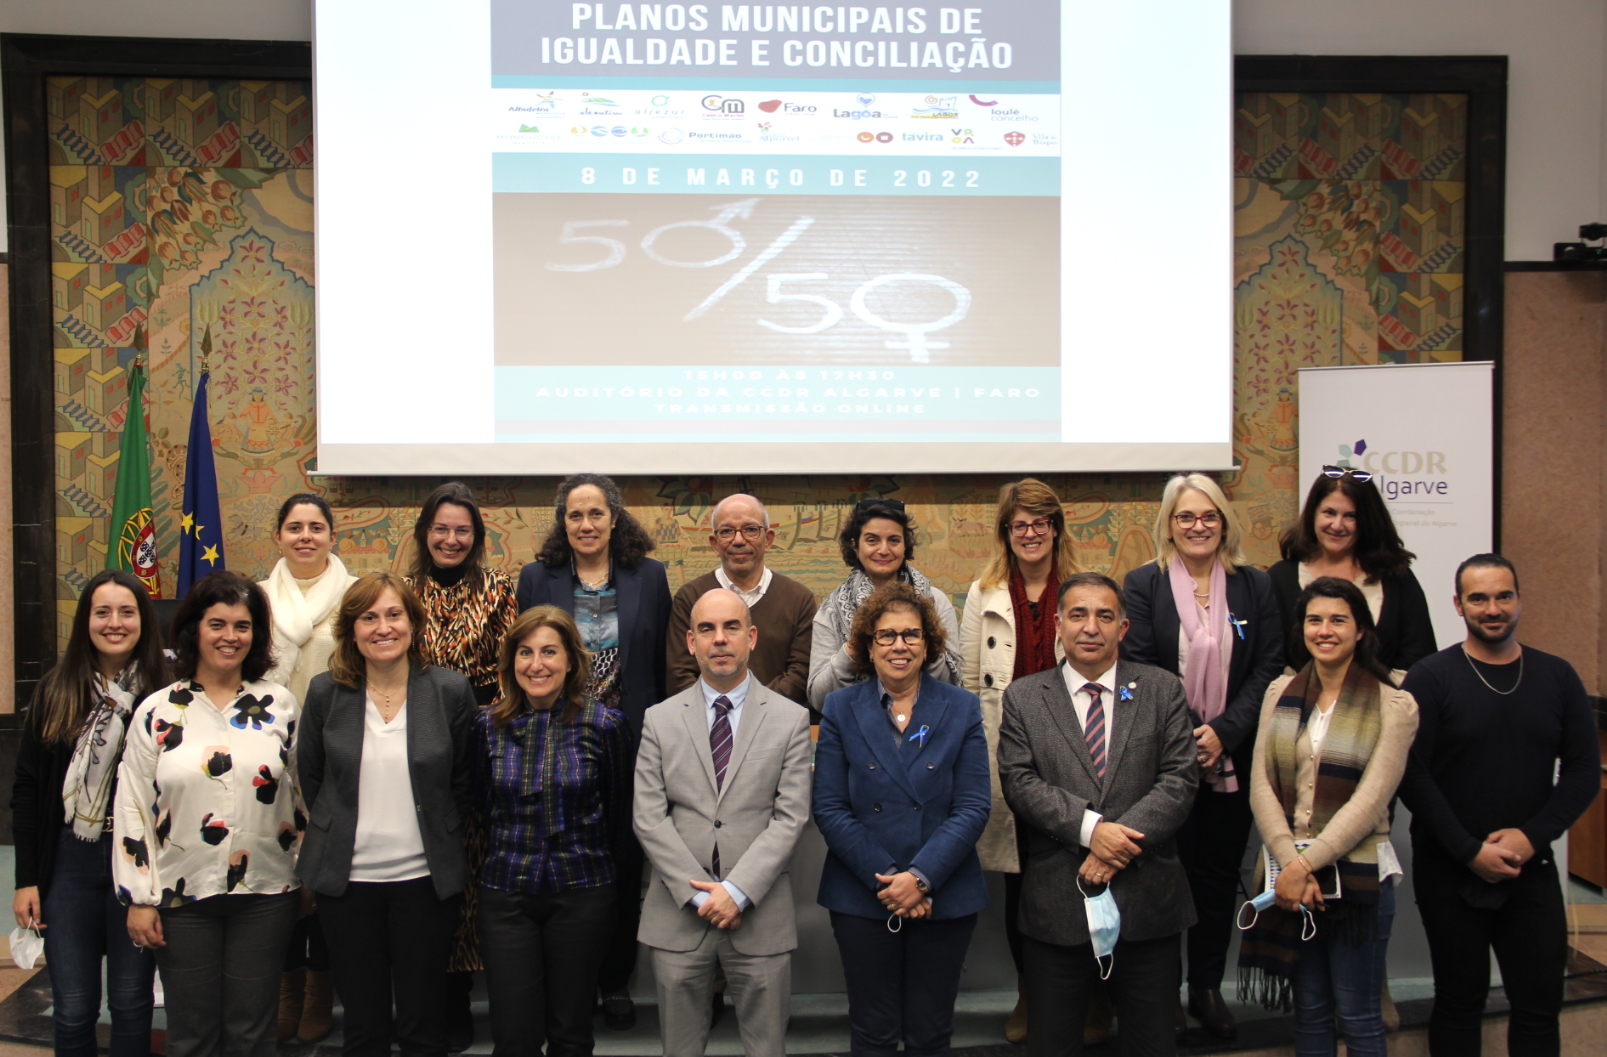 Workshop Boas Práticas Planos Municipais de Igualdade e Conciliação (8 de Março) - Intervenção do Presidente da CCDR Algarve, Dr. José Apolinário